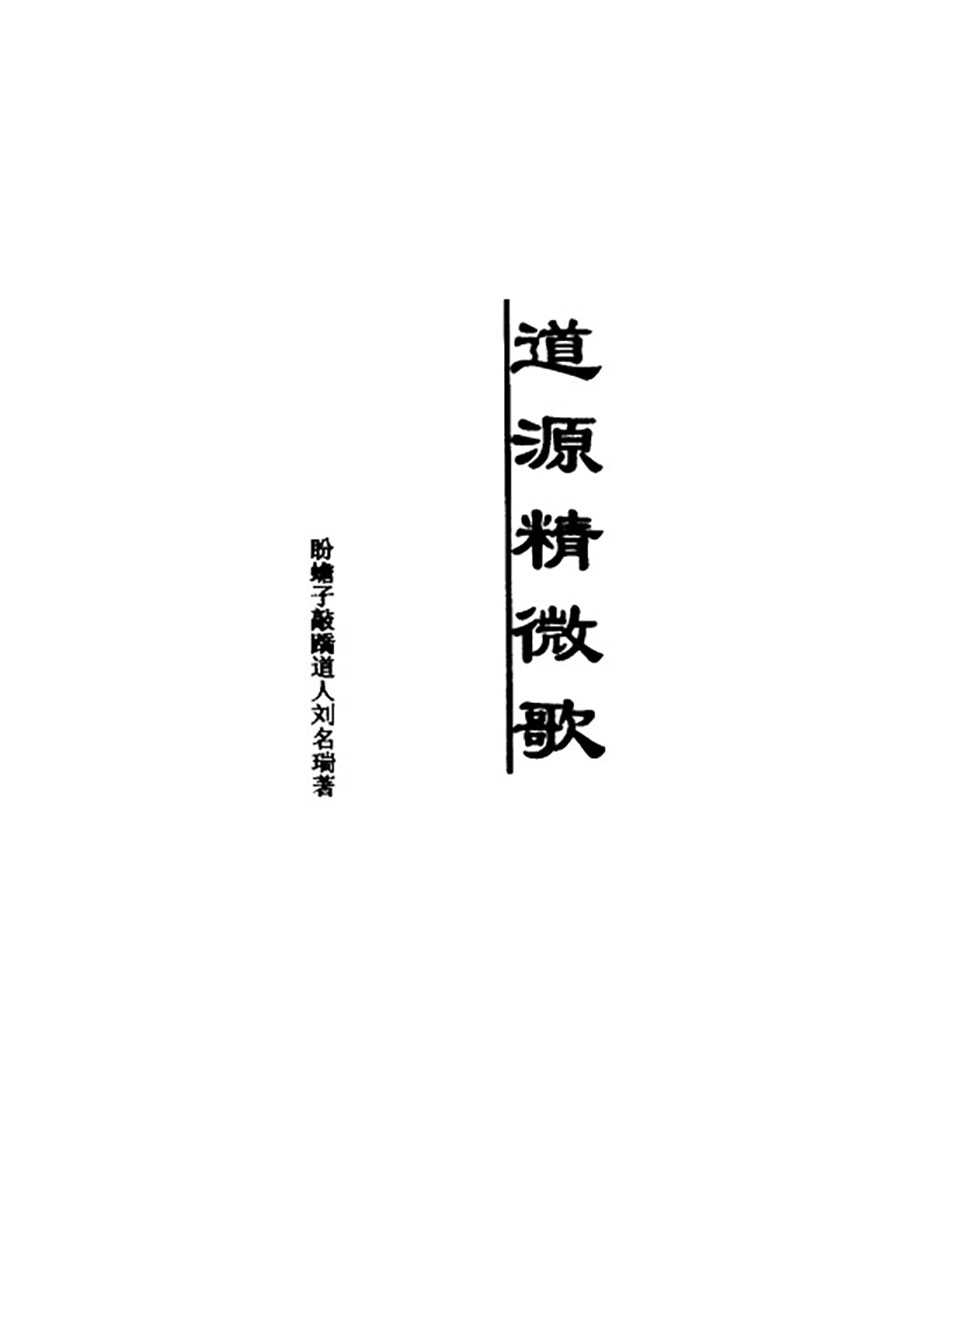 Tao Yuan Jing Wei Gong by Liu Ming Rui 434 pages.pdf